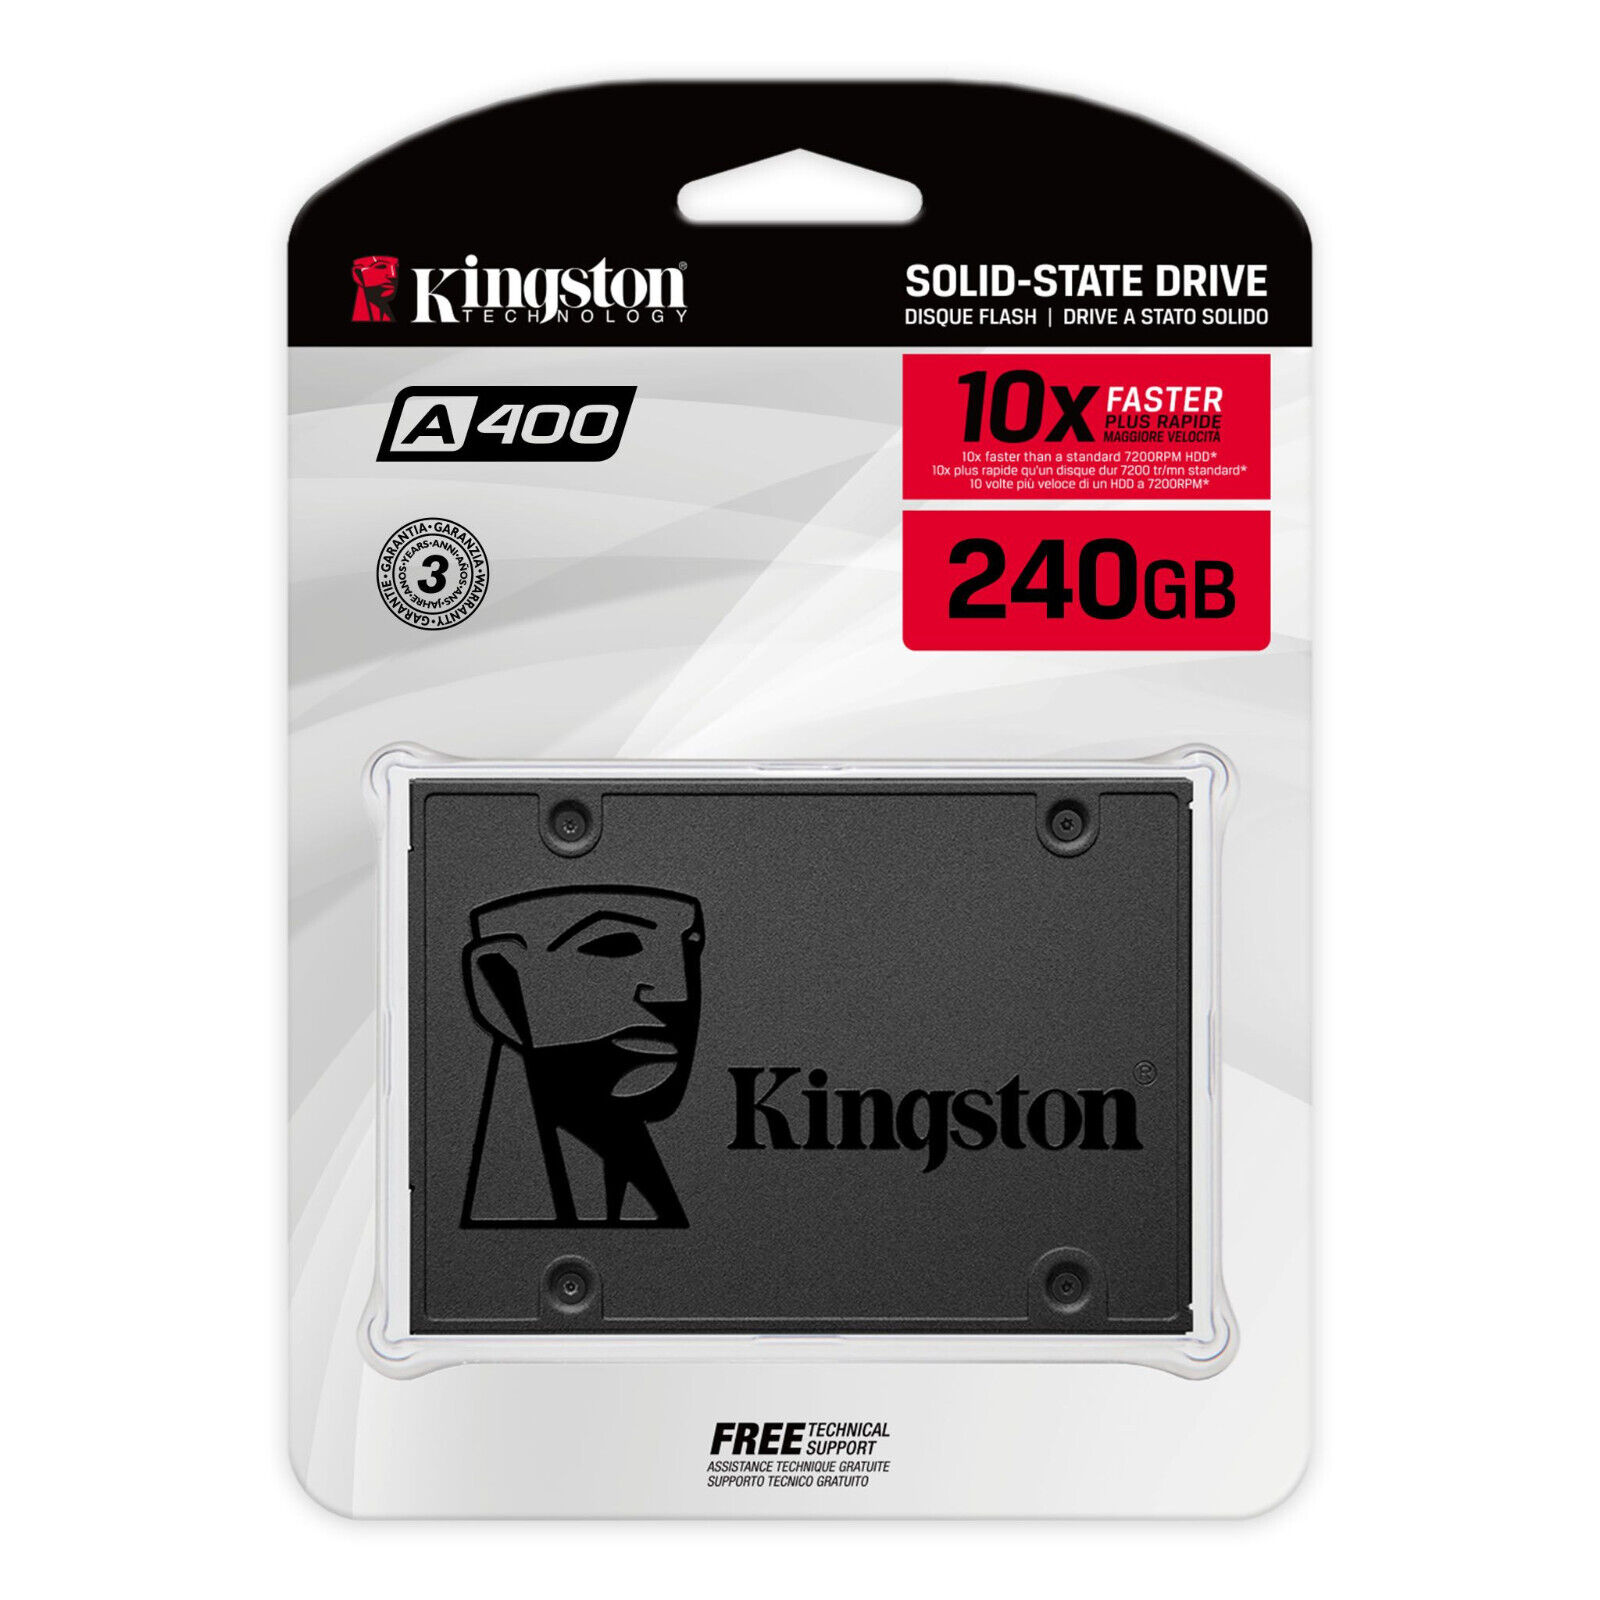 Kingston SSD 120GB 240GB 480GB 960GB Internal Solid State Drive SATA III 2.5